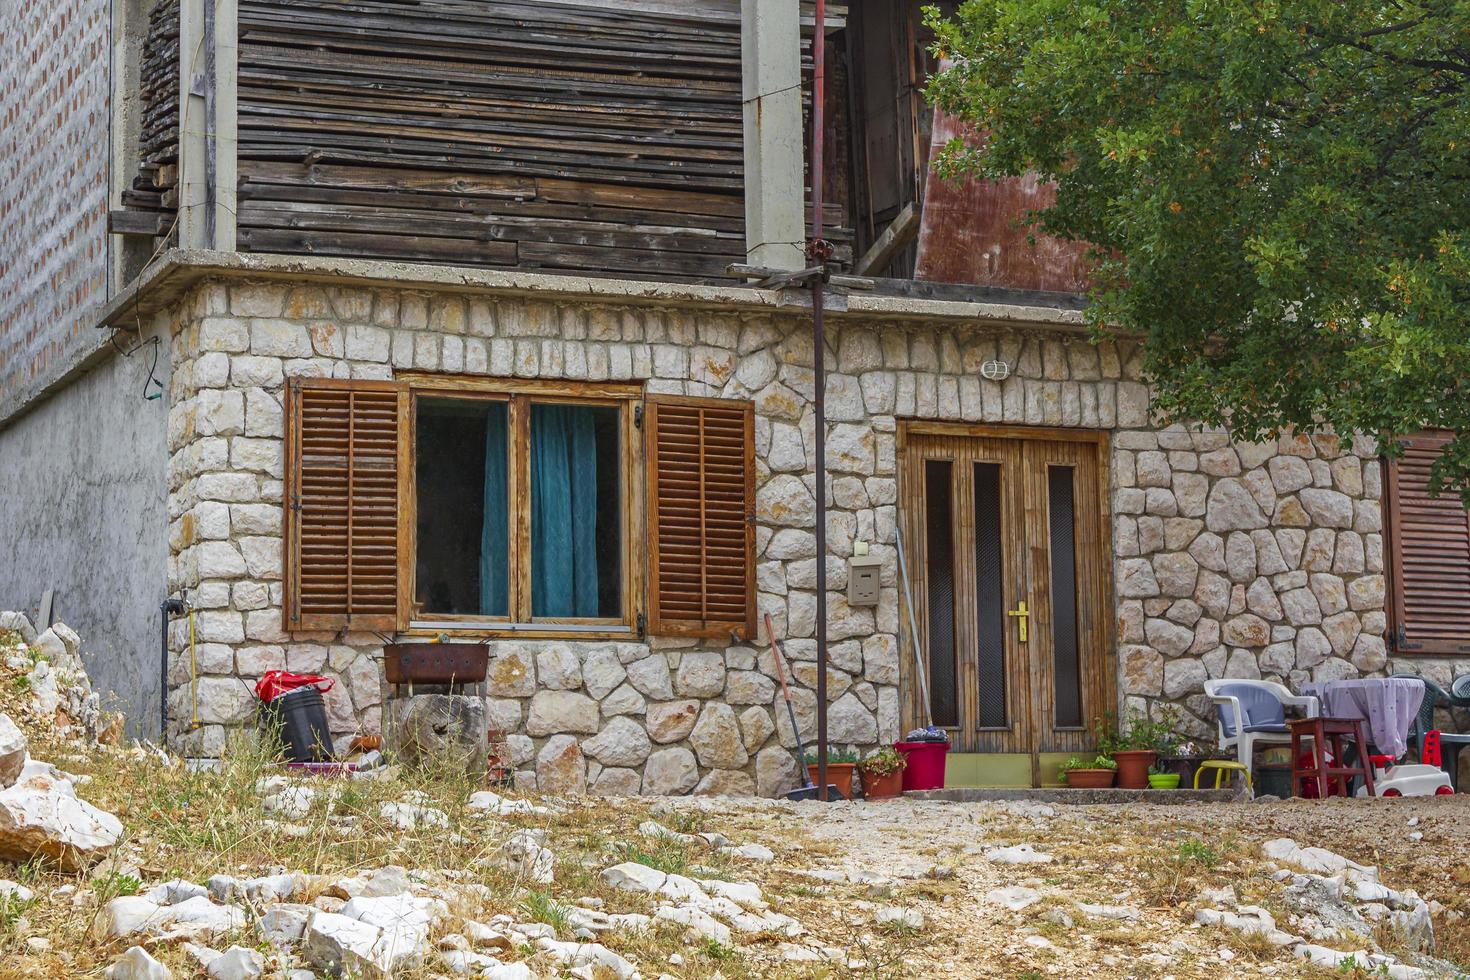 typisch stenen huis met tuin in kroatië. foto